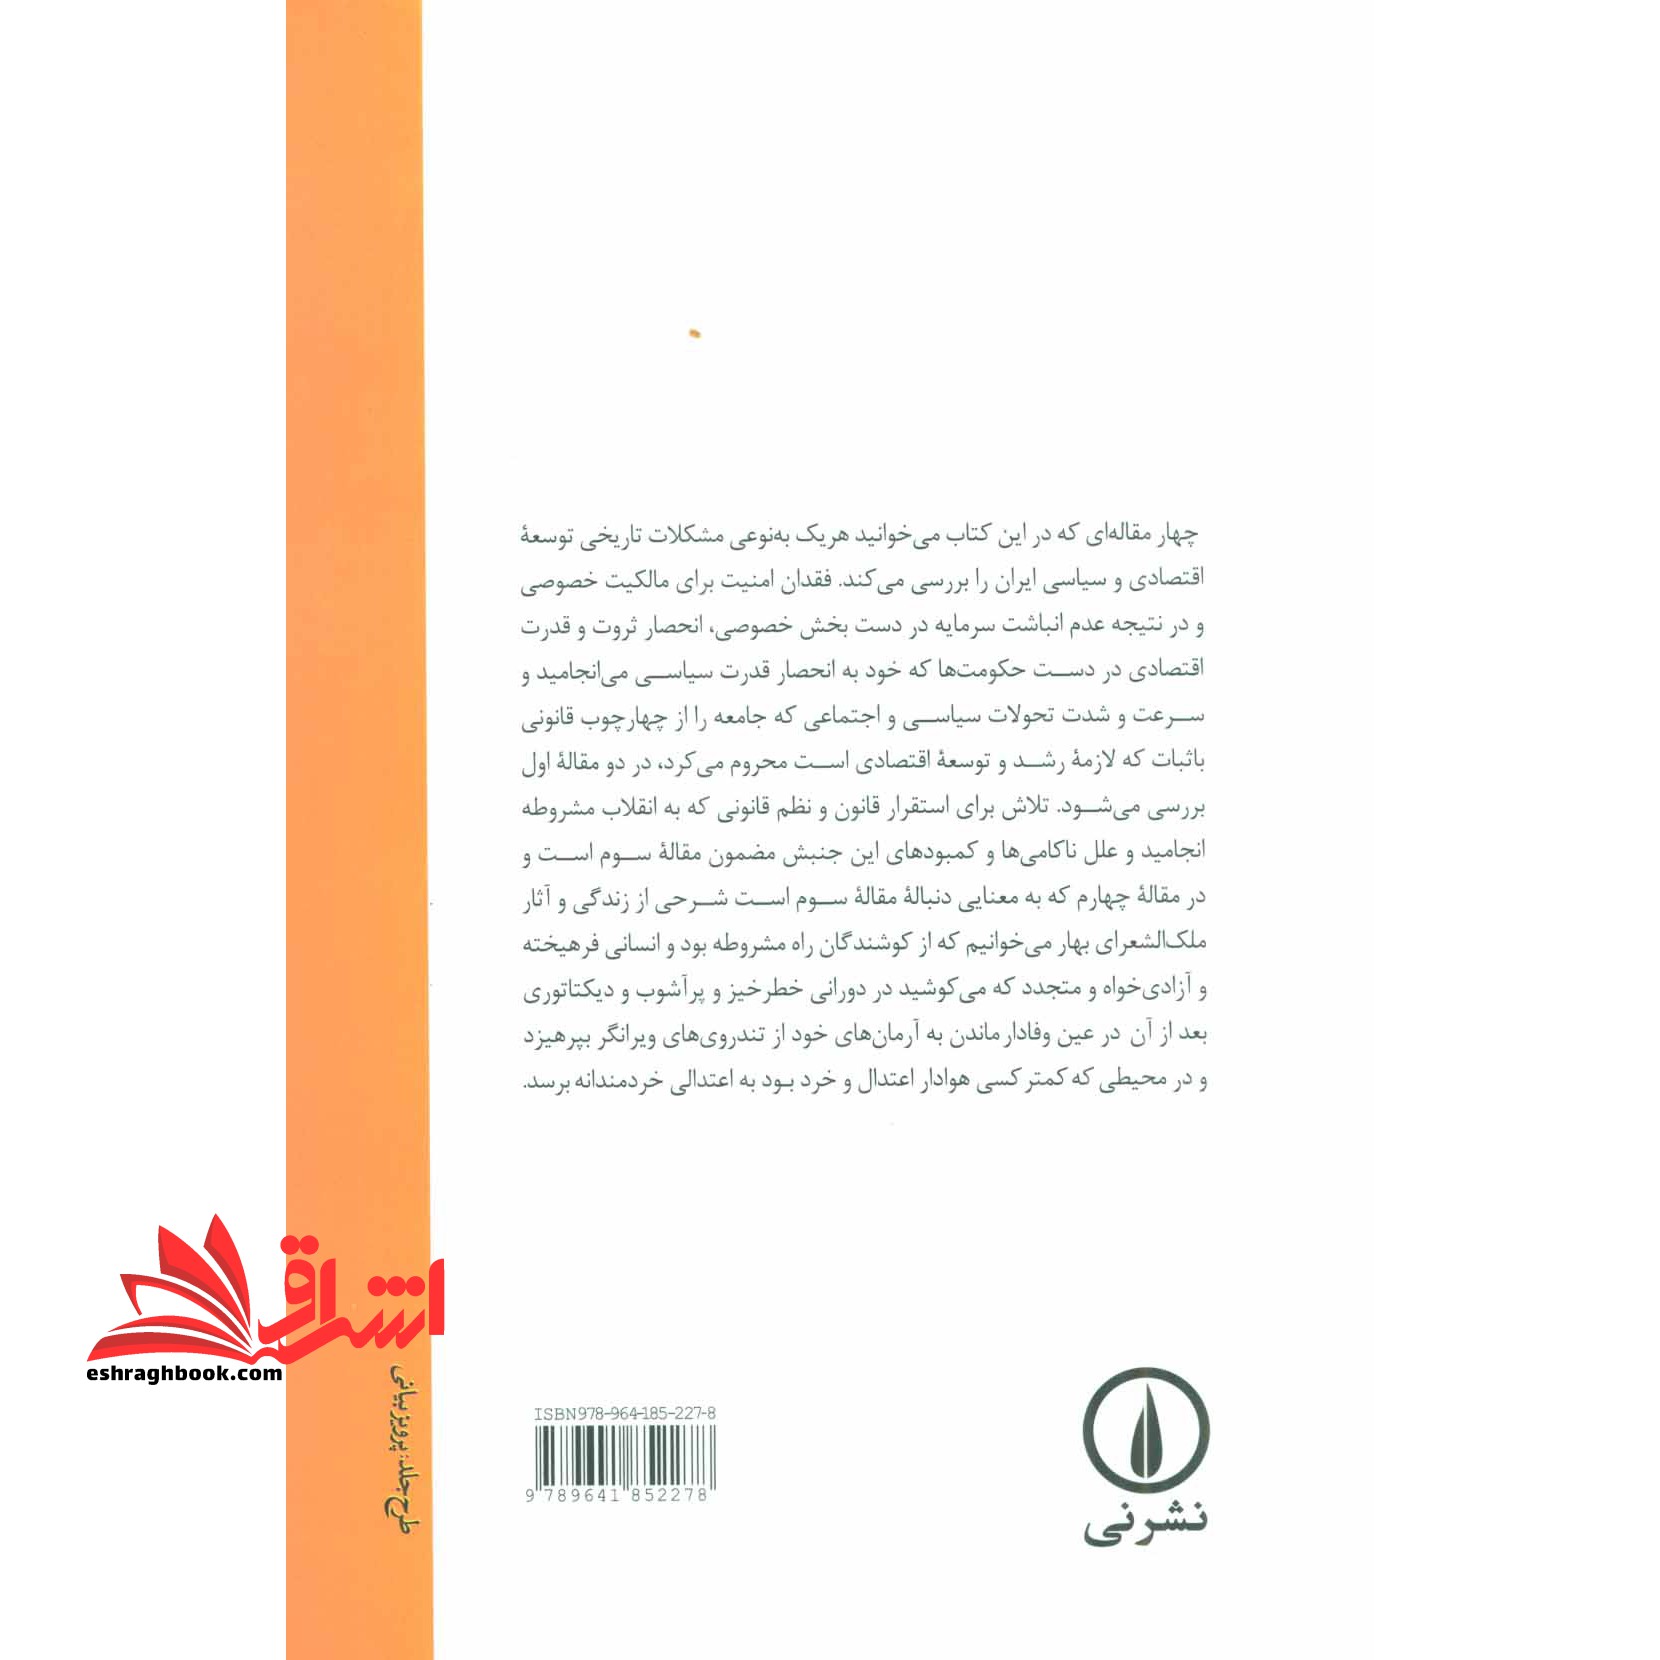 کتاب ایران جامعه کوتاه مدت - و ۳ مقاله دیگر